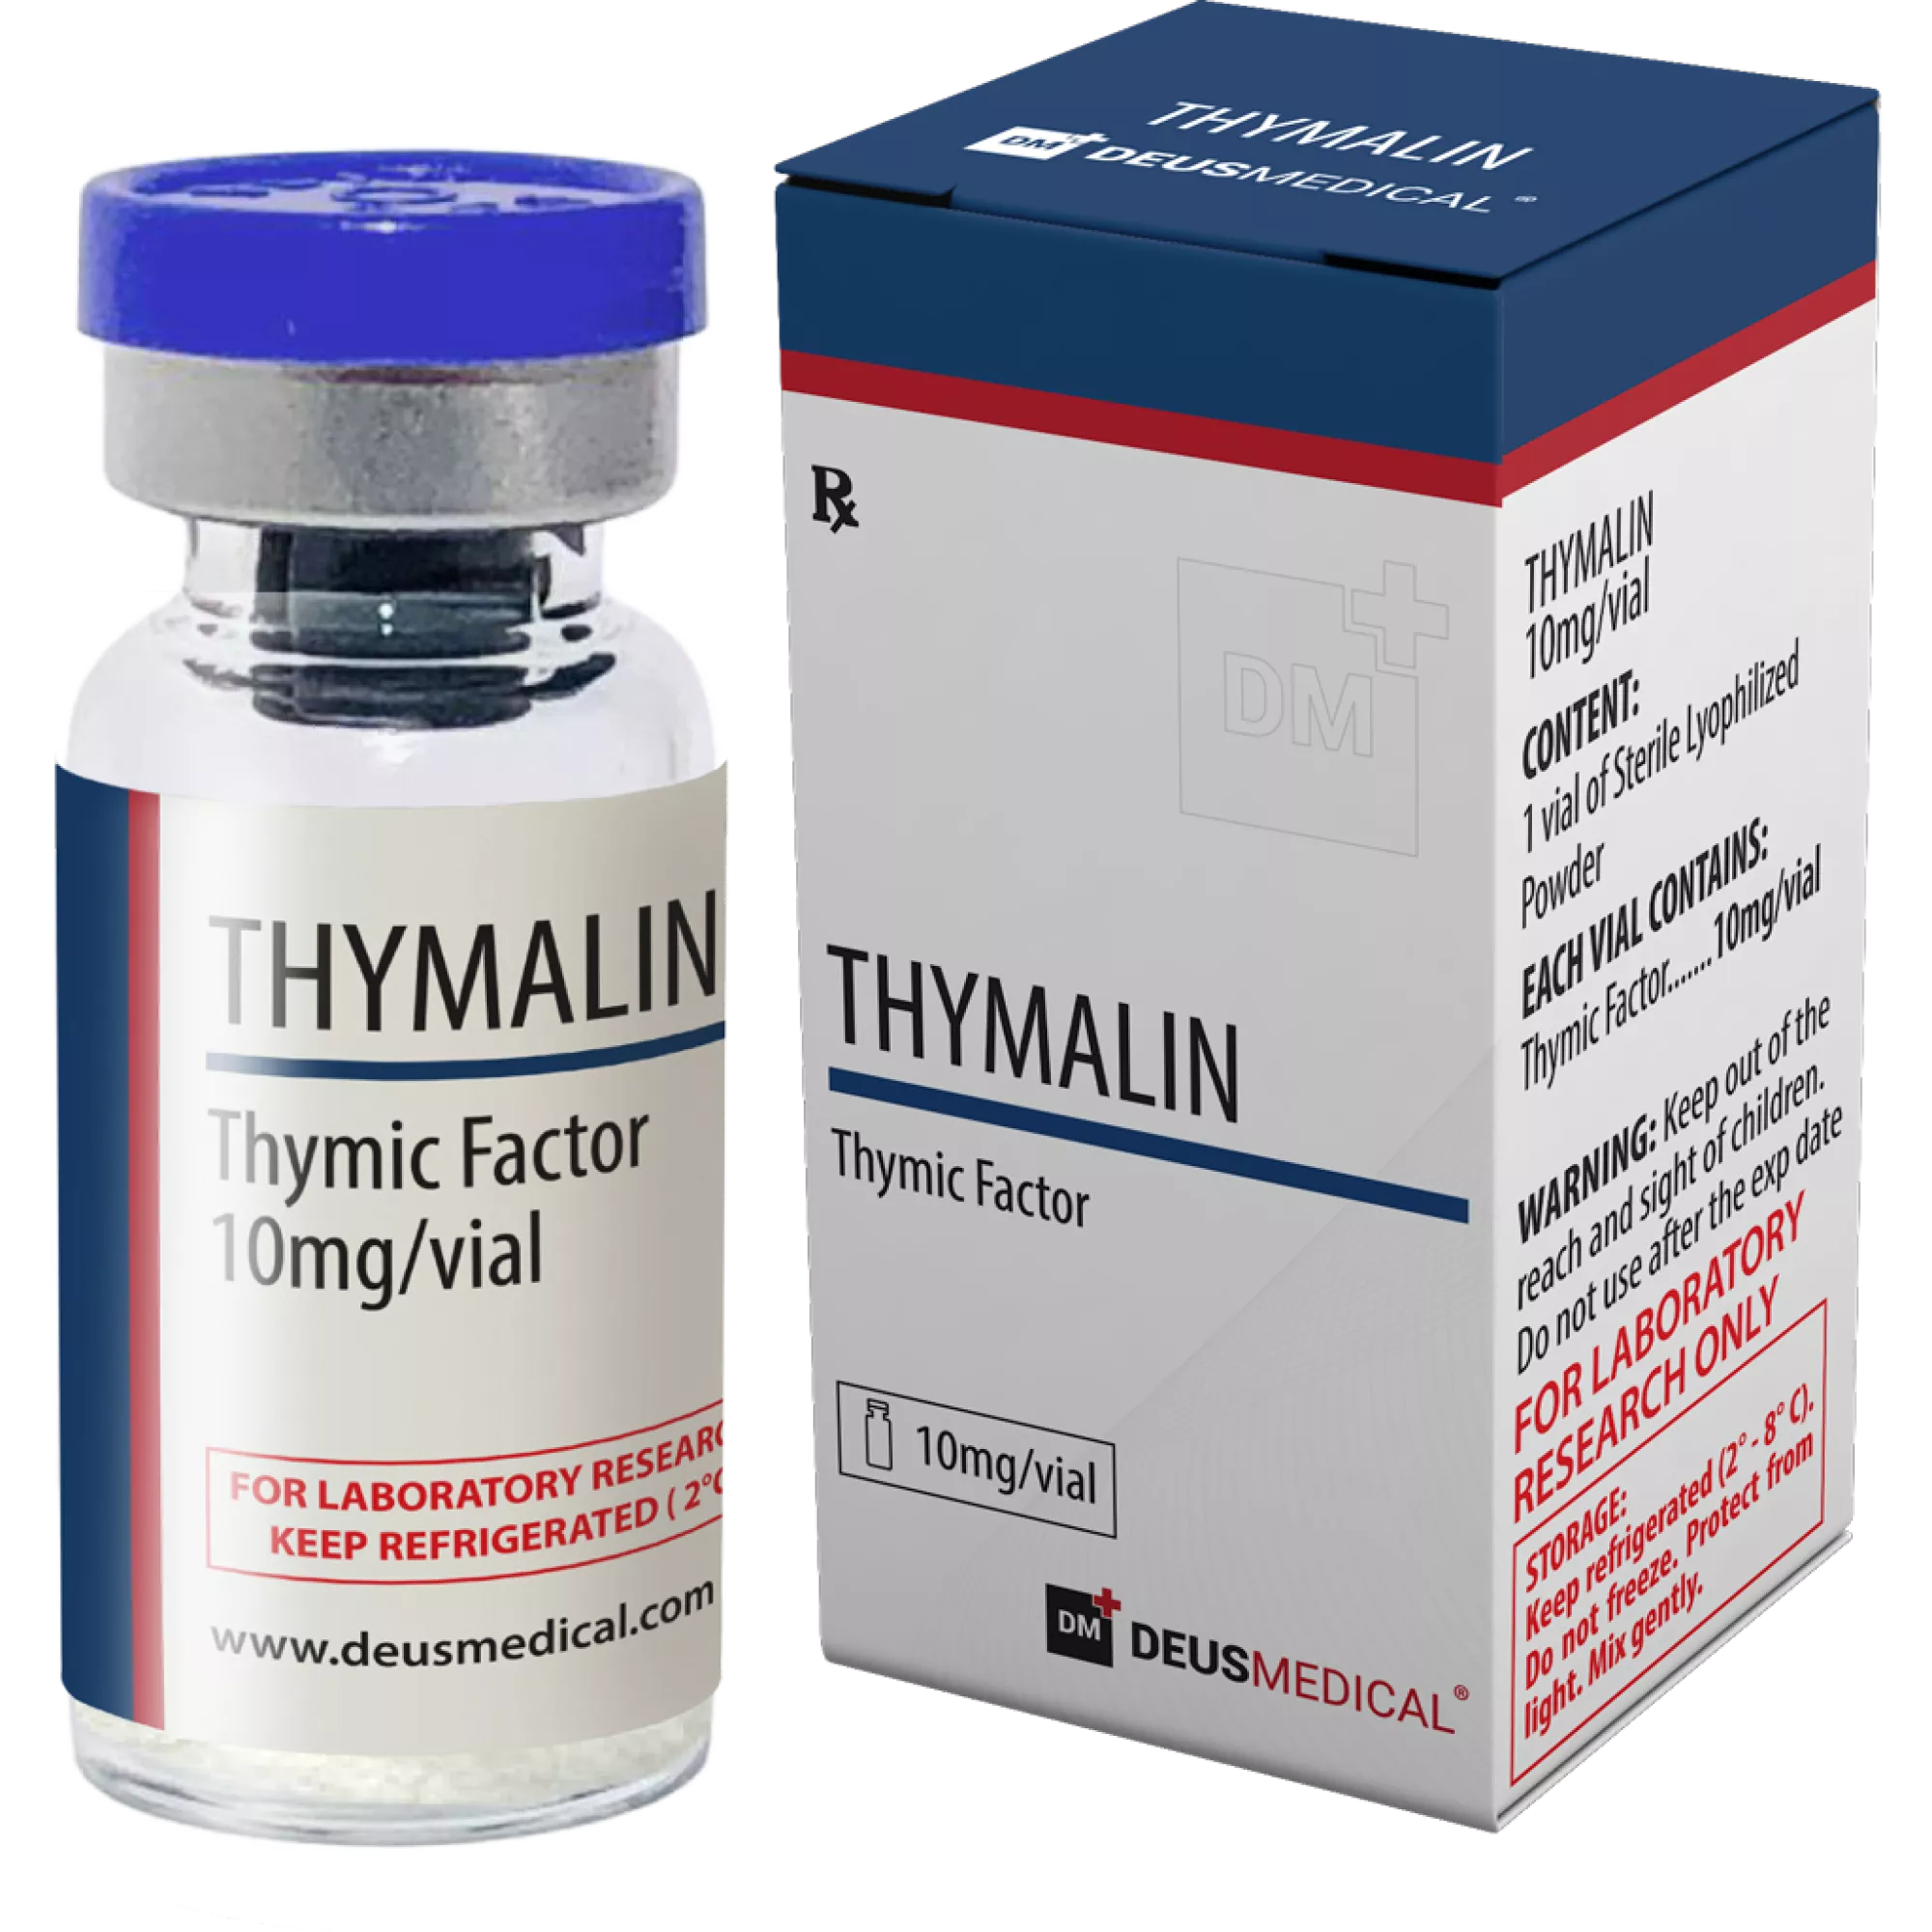 THYMALIN (tymisk faktor), Deus Medical, köp steroider online - www.deuspower.shop